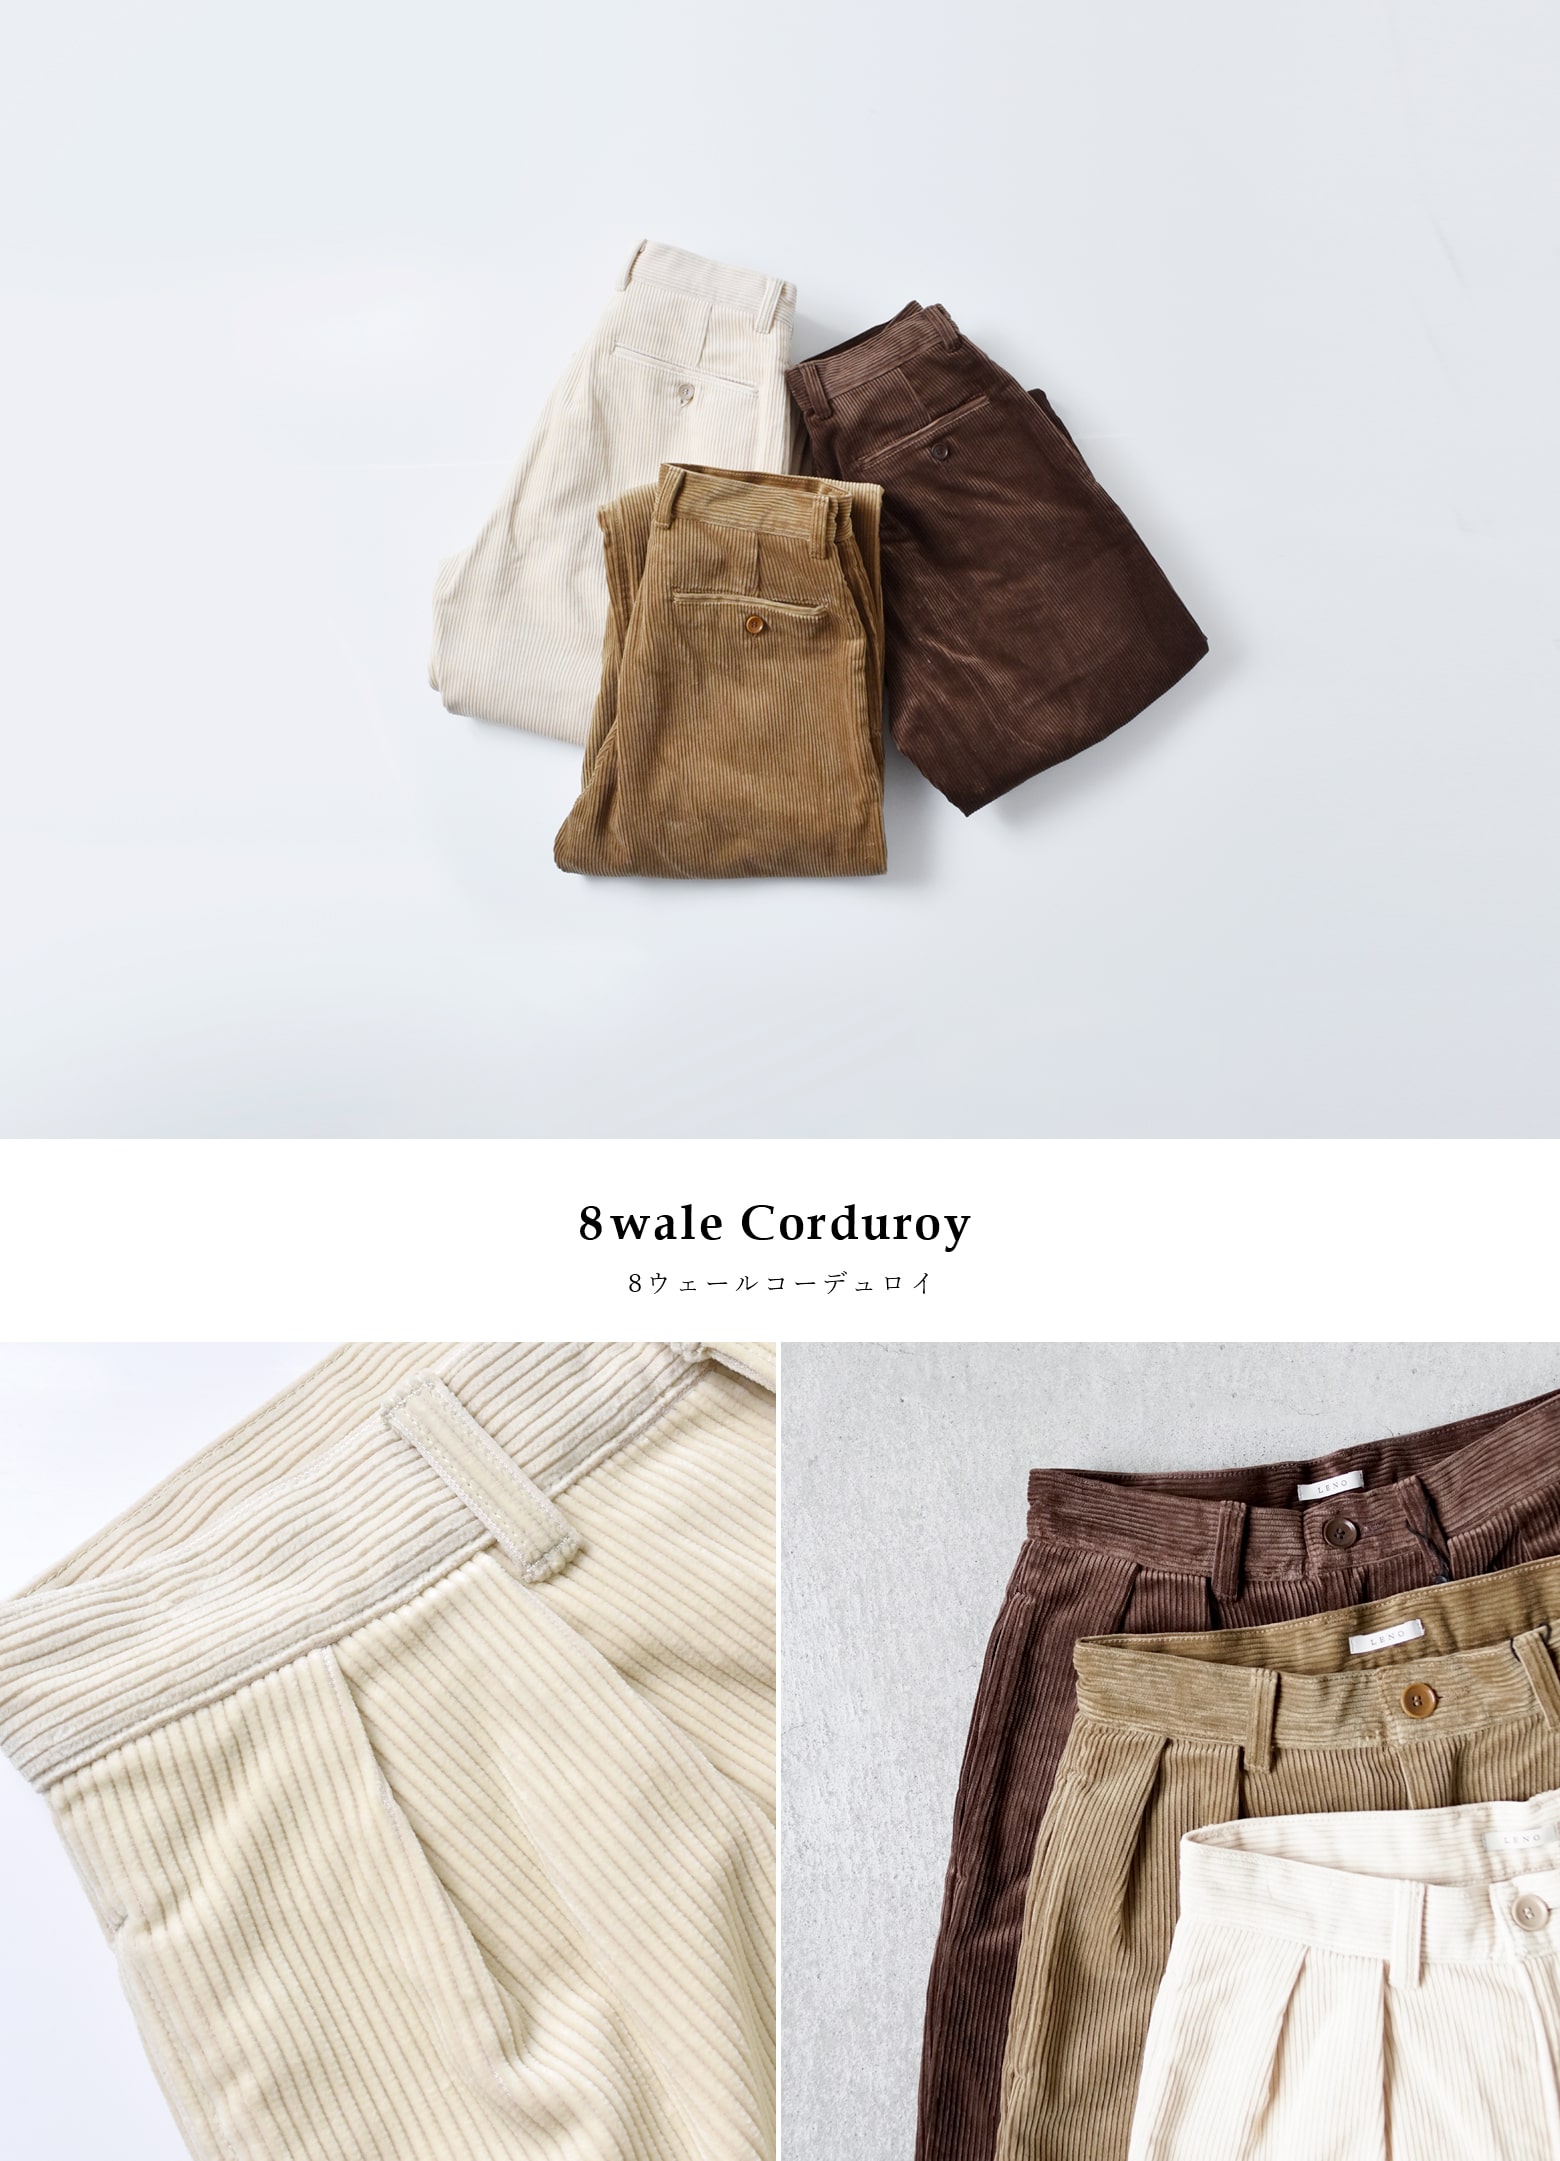 LENO(リノ)コーデュロイトラウザーズ“Corduroy Trousers” l1902-pt003 